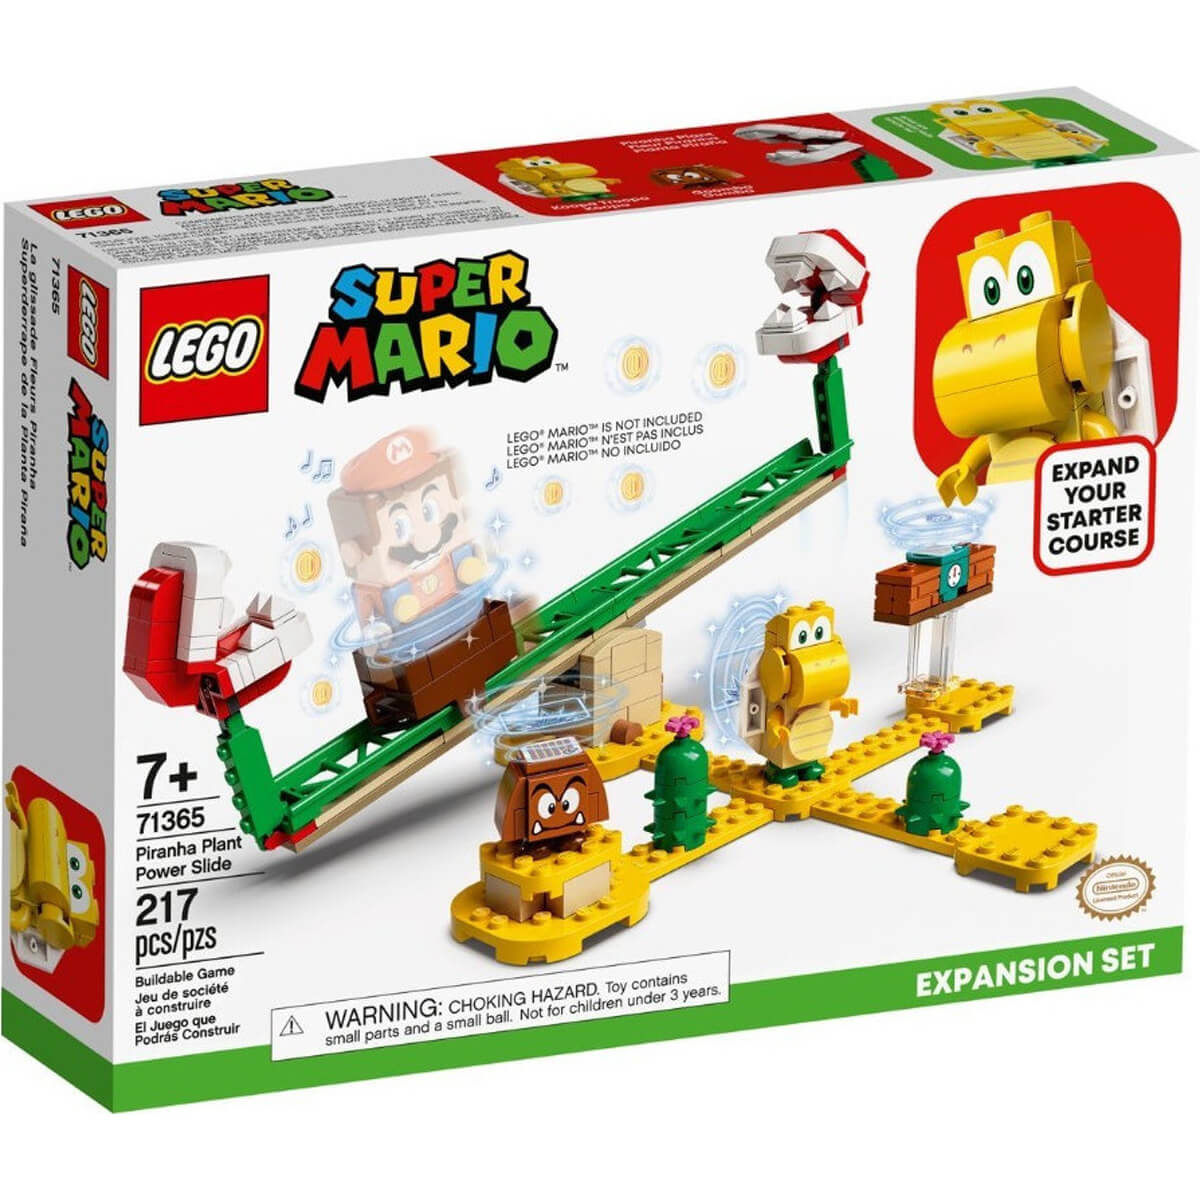 ΠΑΙΔΙ | Παιχνίδια | LEGO | SUPER MARIO 71365 Piranha Plant Power Slide Expansion Set